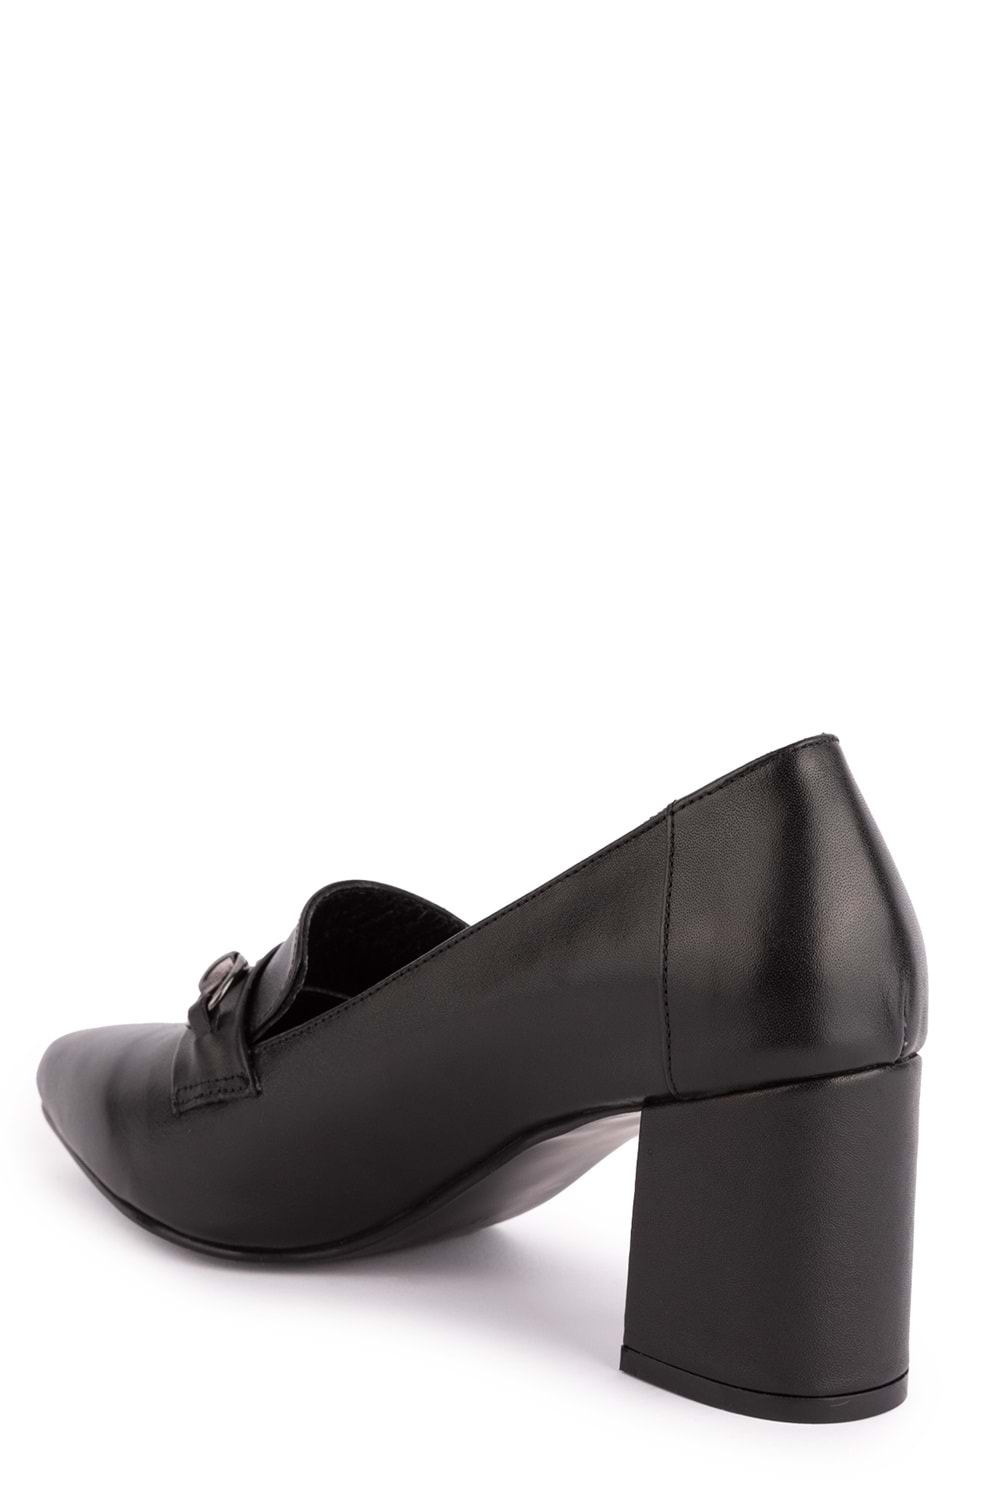 Gondol Kadın Hakiki Deri Klasik Topuklu Toka Detaylı Ayakkabı şhn.956 - Siyah - 35